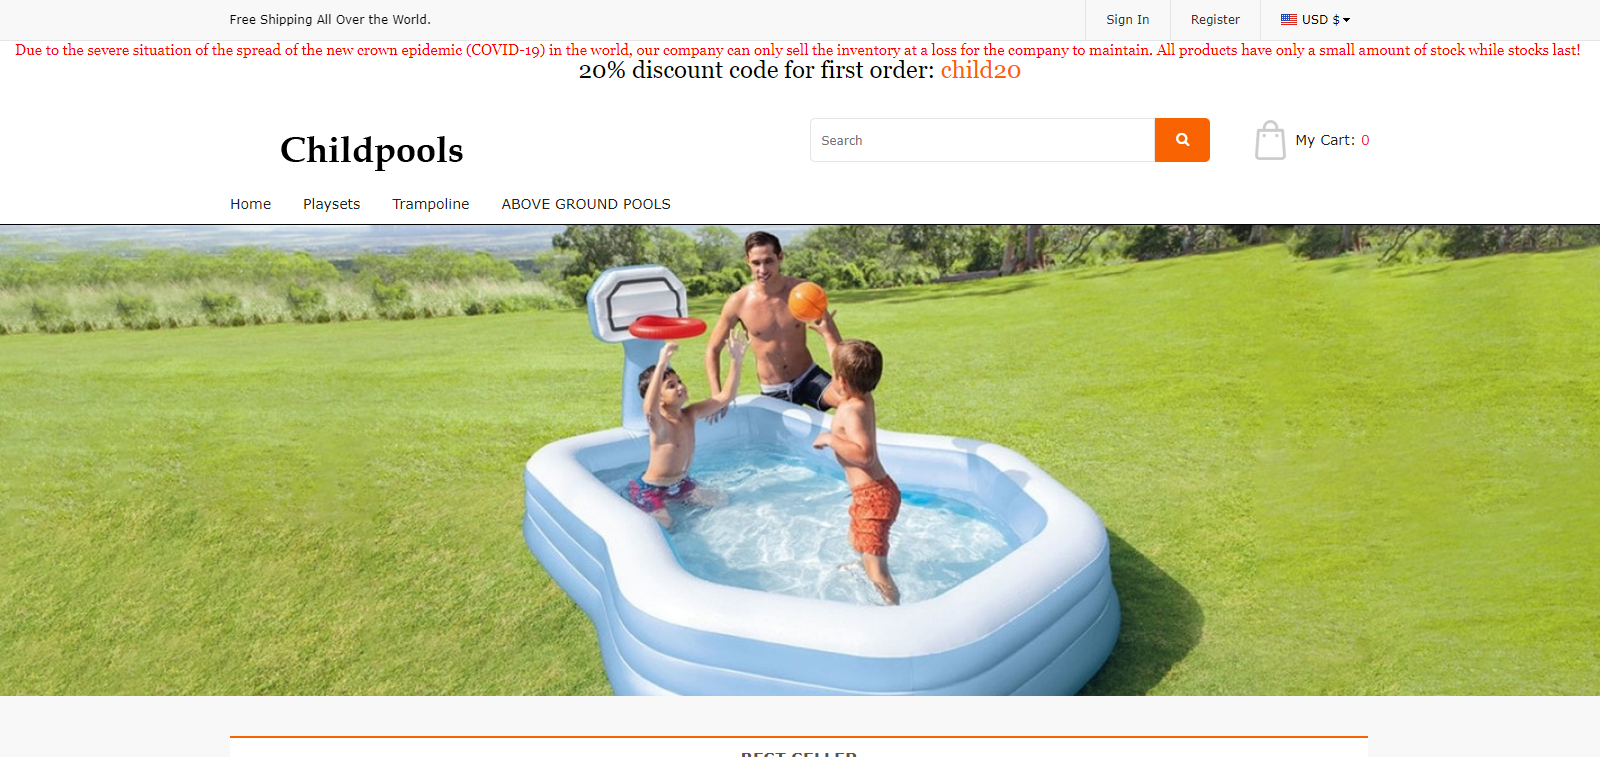 Childpools Homepage Image